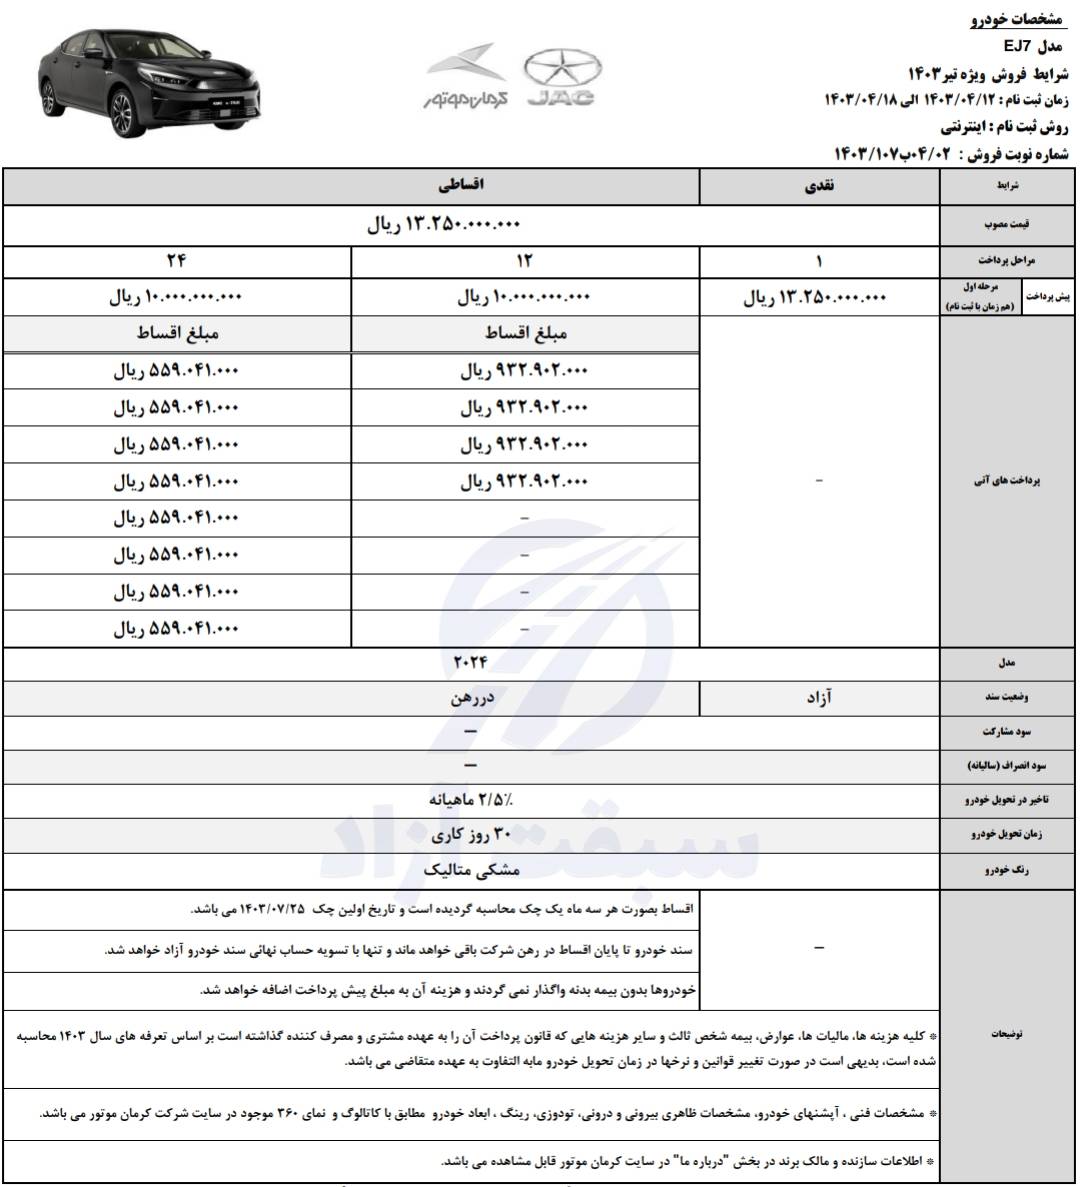 قیمت خودروی برقی KMC EJ7 کرمان موتور و شرایط فروش نقد و اقساط در تیر ماه 1403